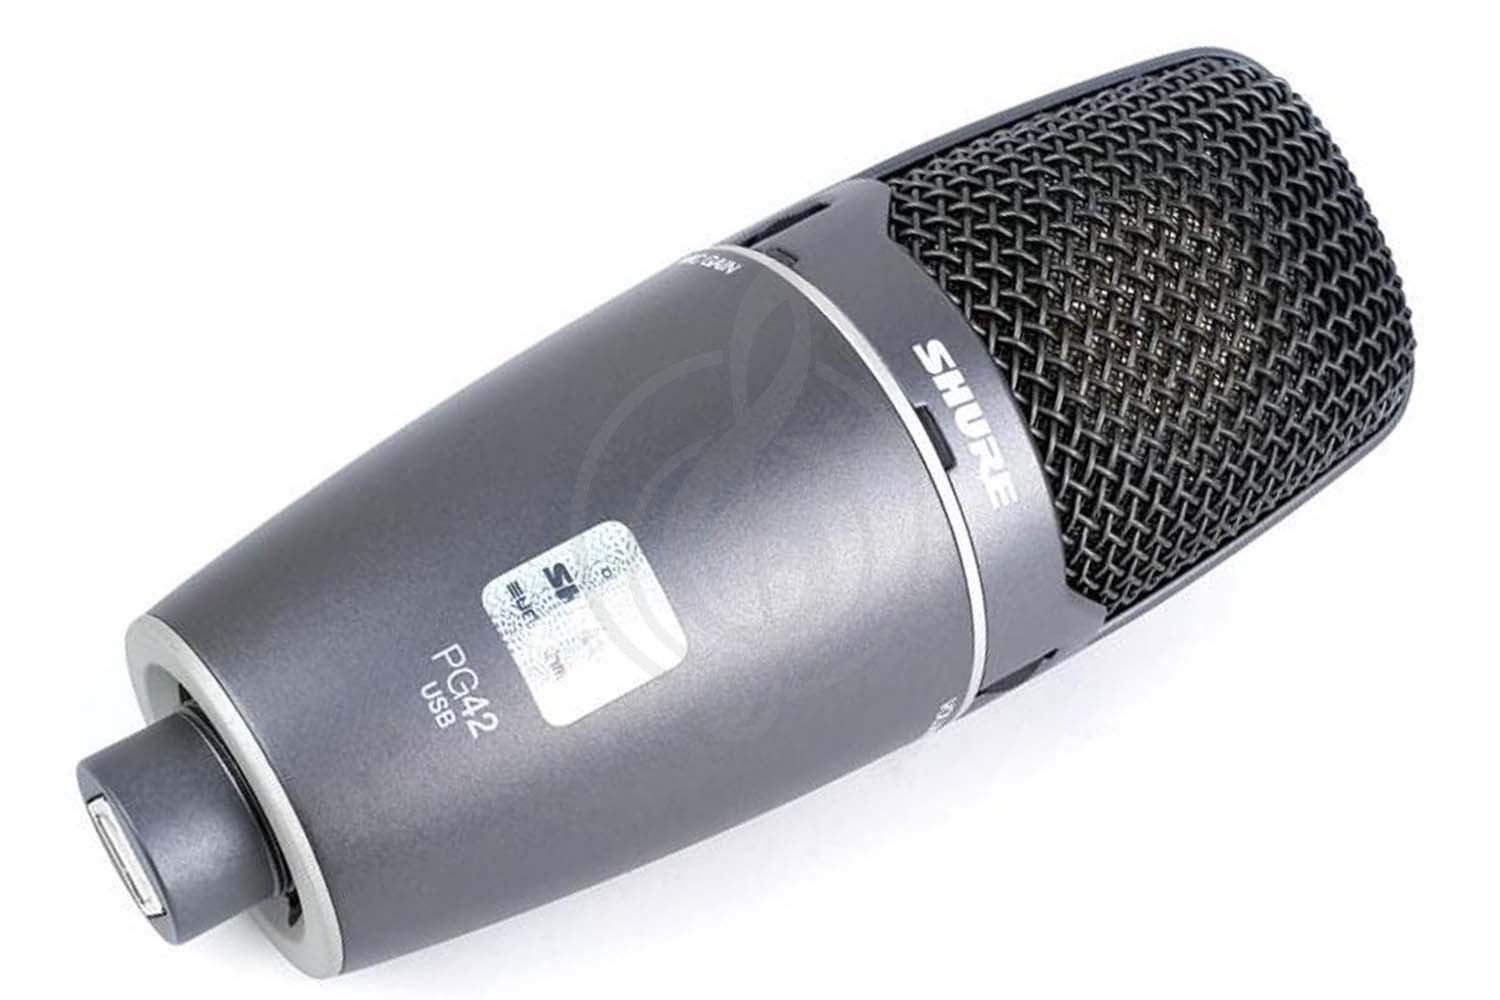 Конденсаторный студийный микрофон Конденсаторные студийные микрофоны Shure SHURE PG42USB - конденсаторный студийный микрофон PG42USB - фото 1